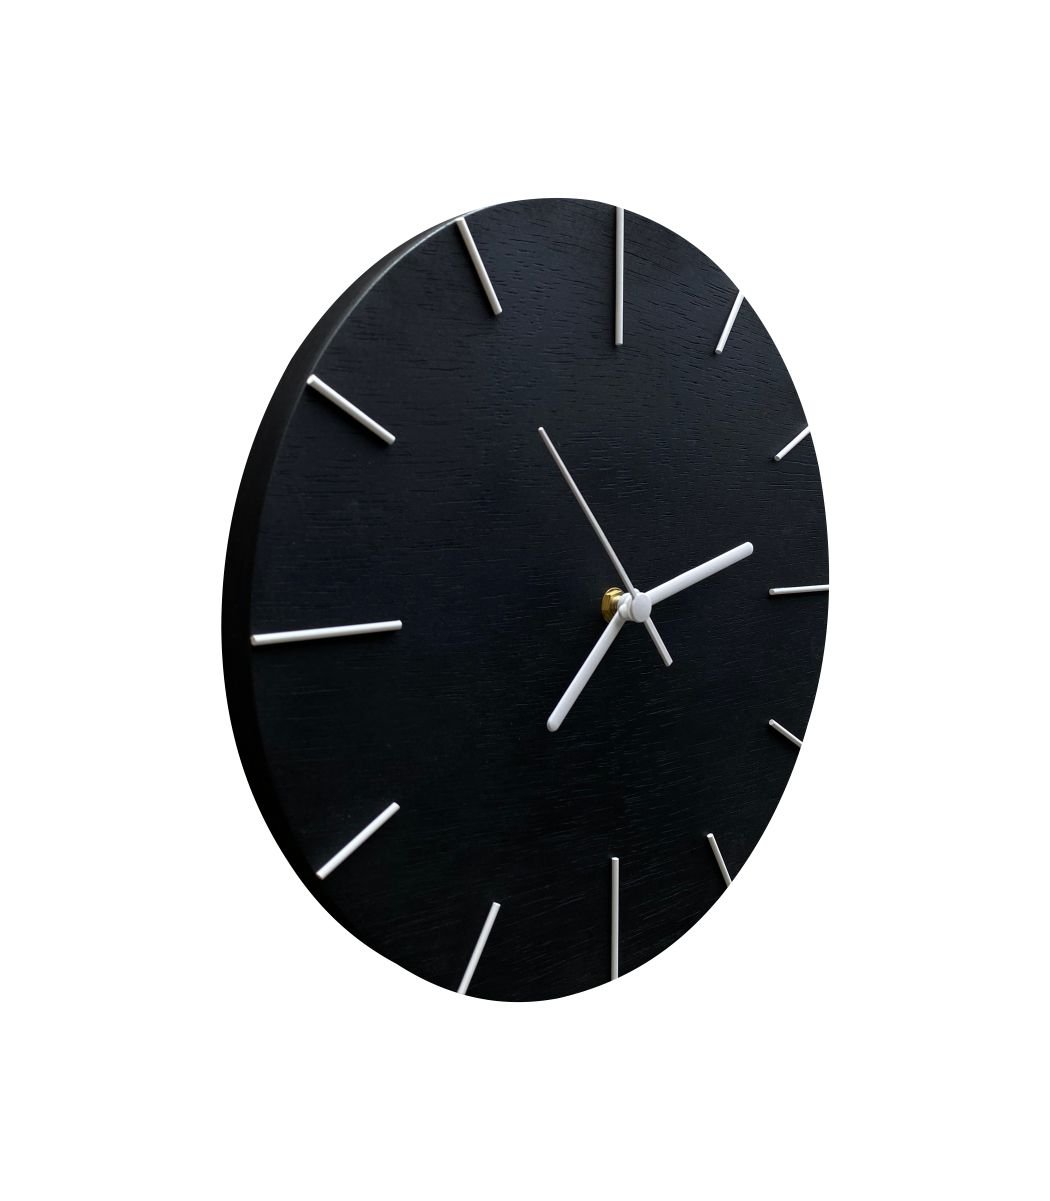 Relógio de Parede Em Madeira Preto Fosco com Ponteiros Branco 30cm - 2